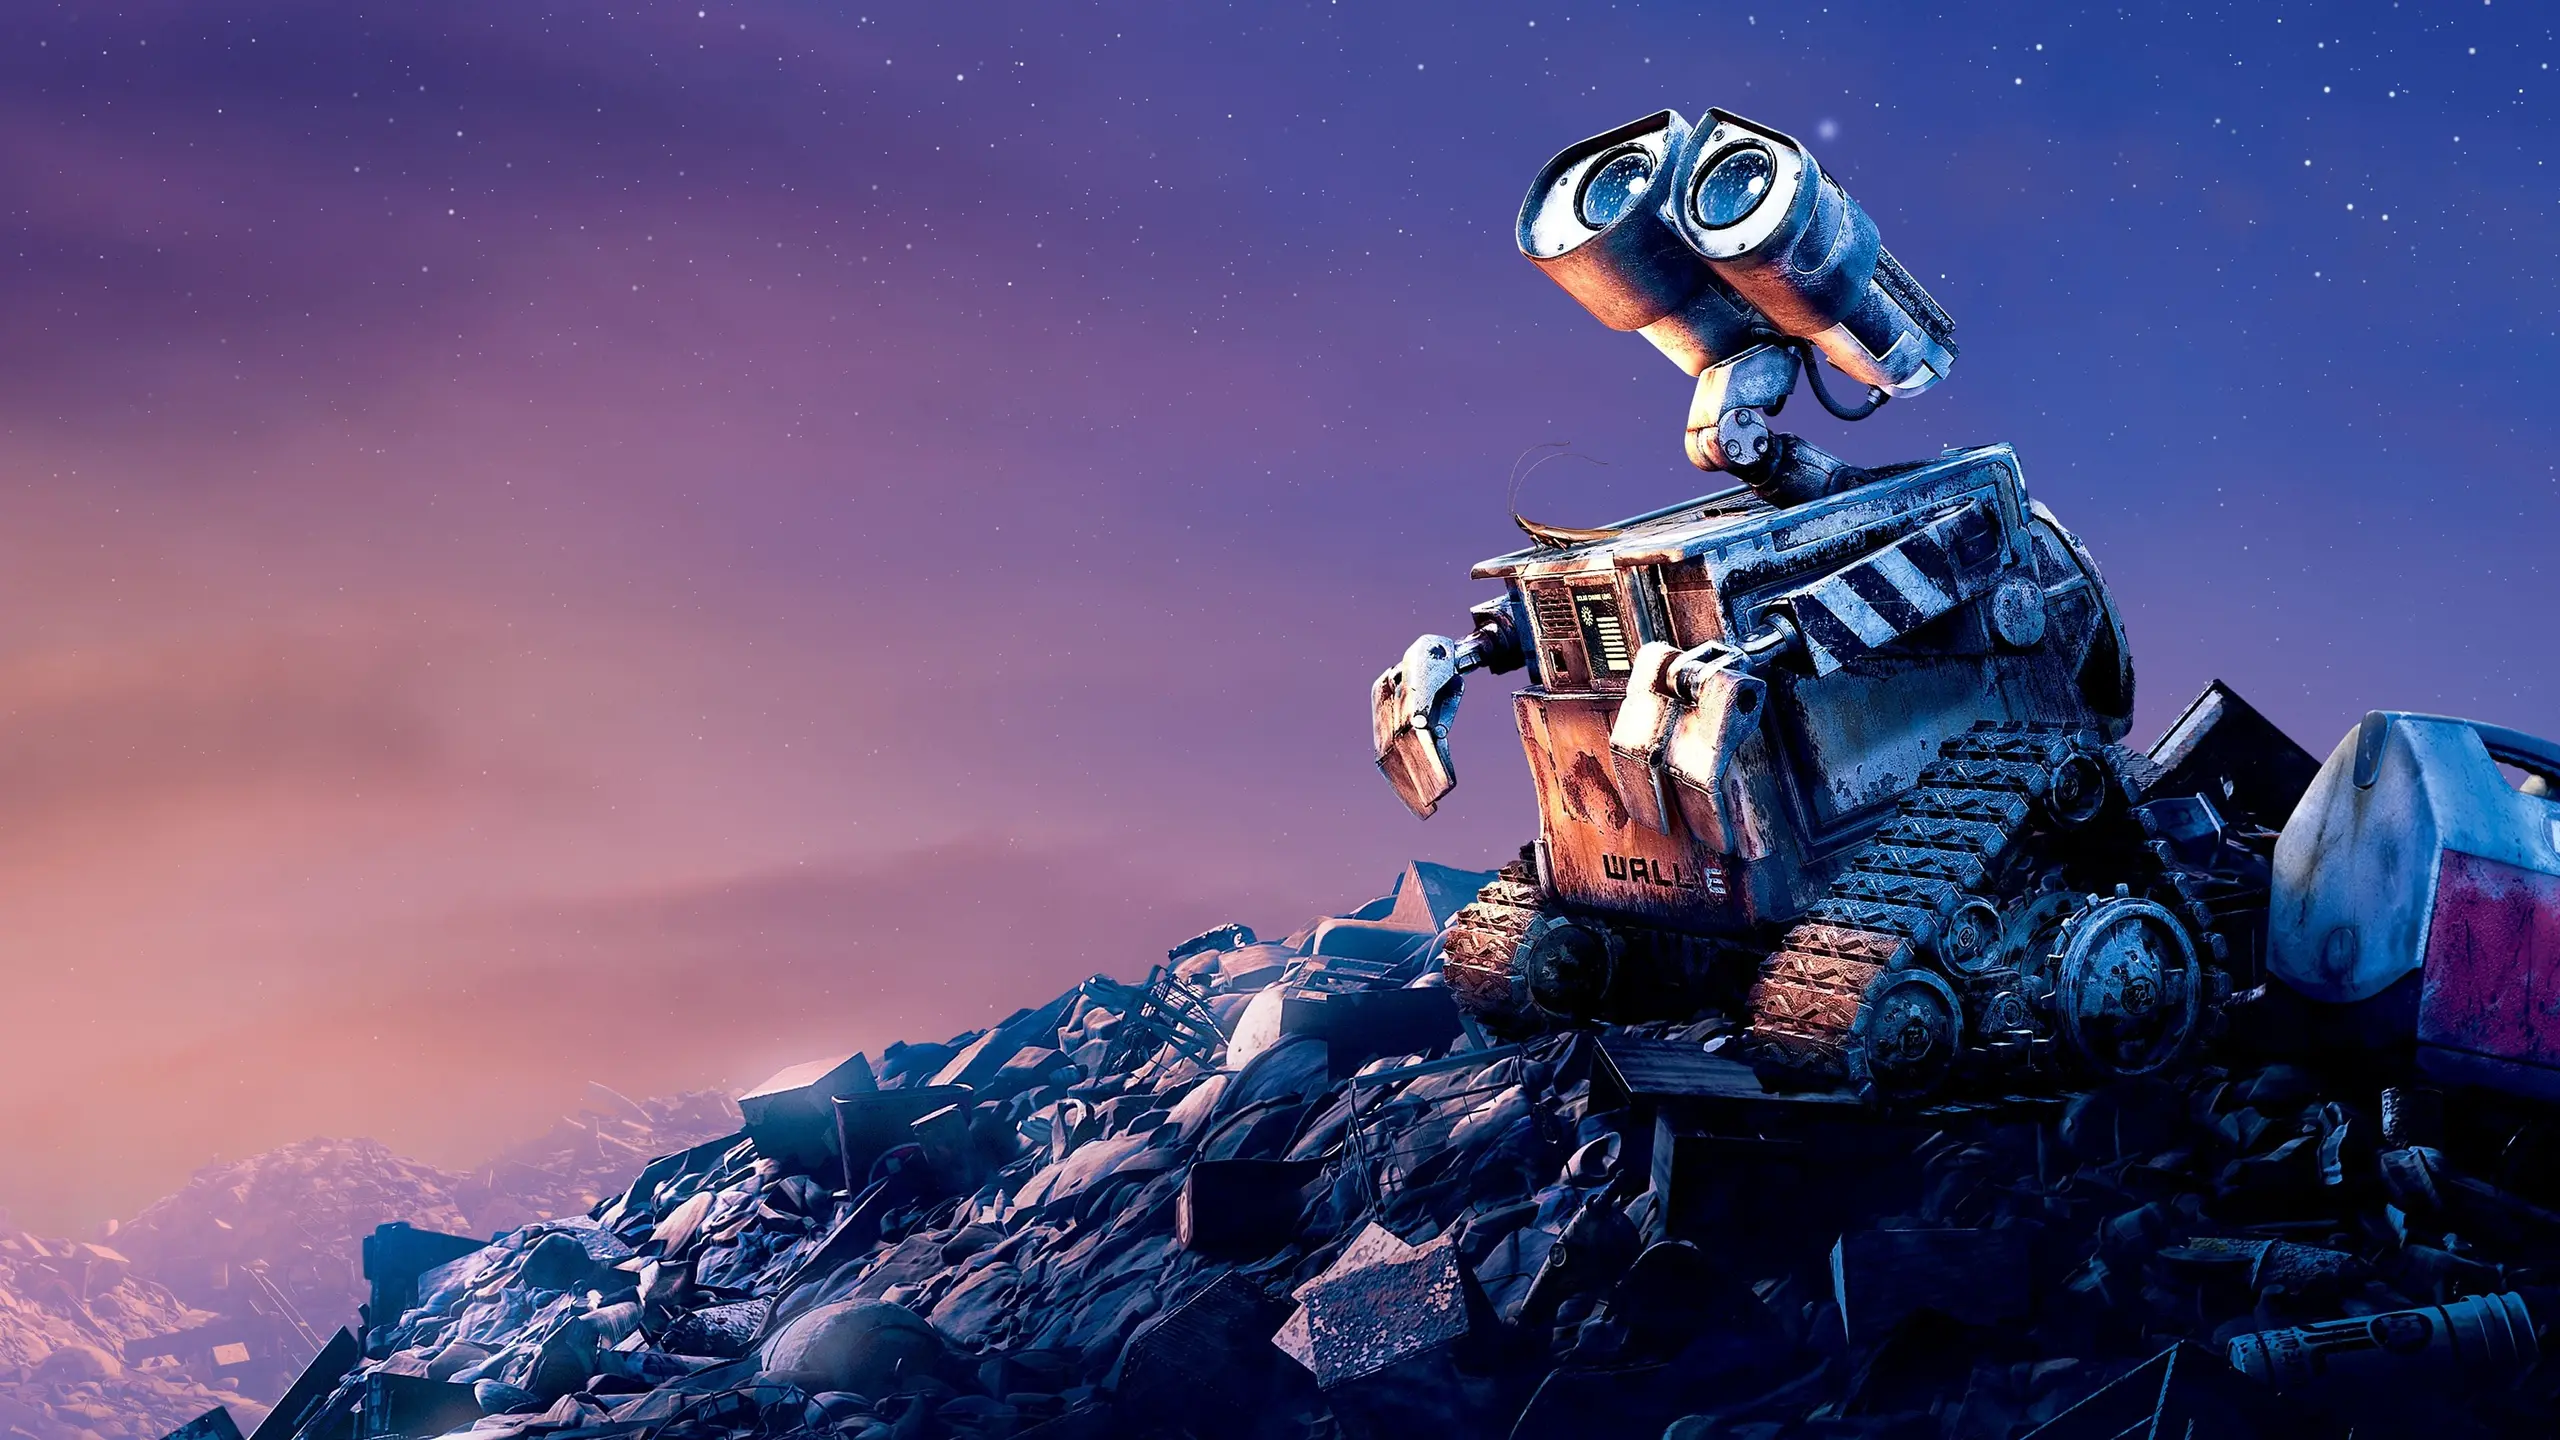 WALL·E - Der Letzte räumt die Erde auf